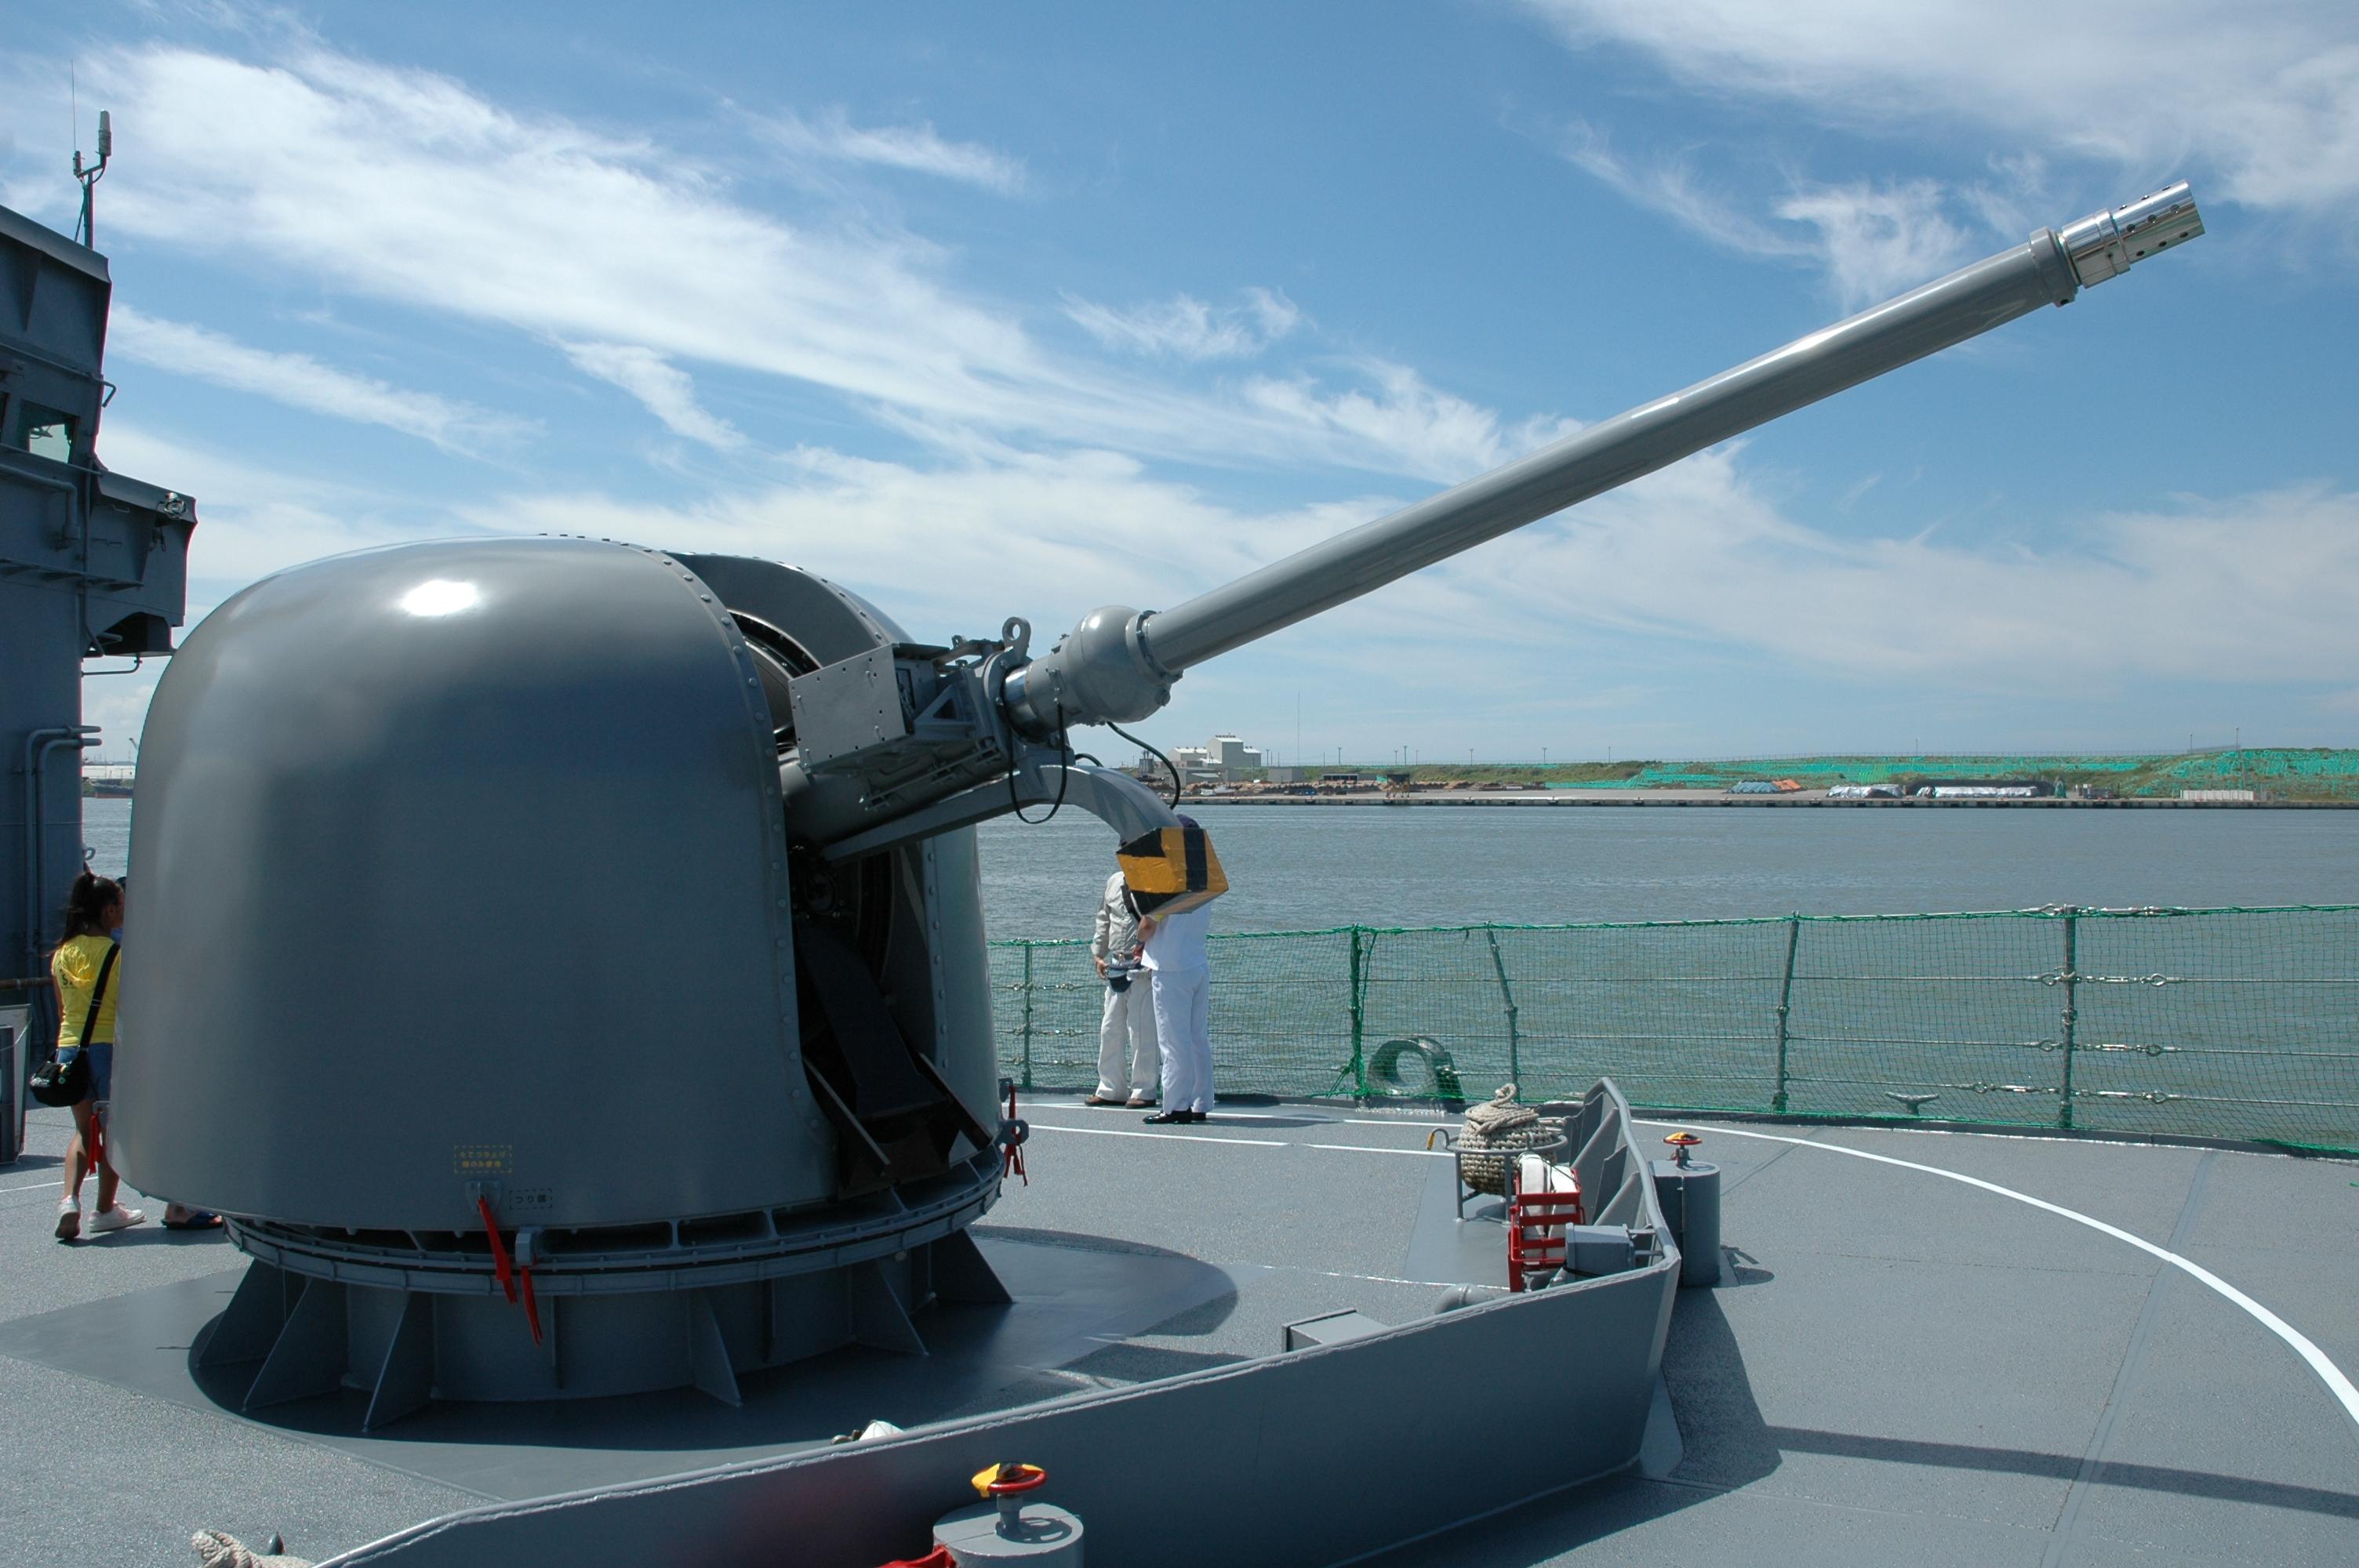 25毫米舰炮图片